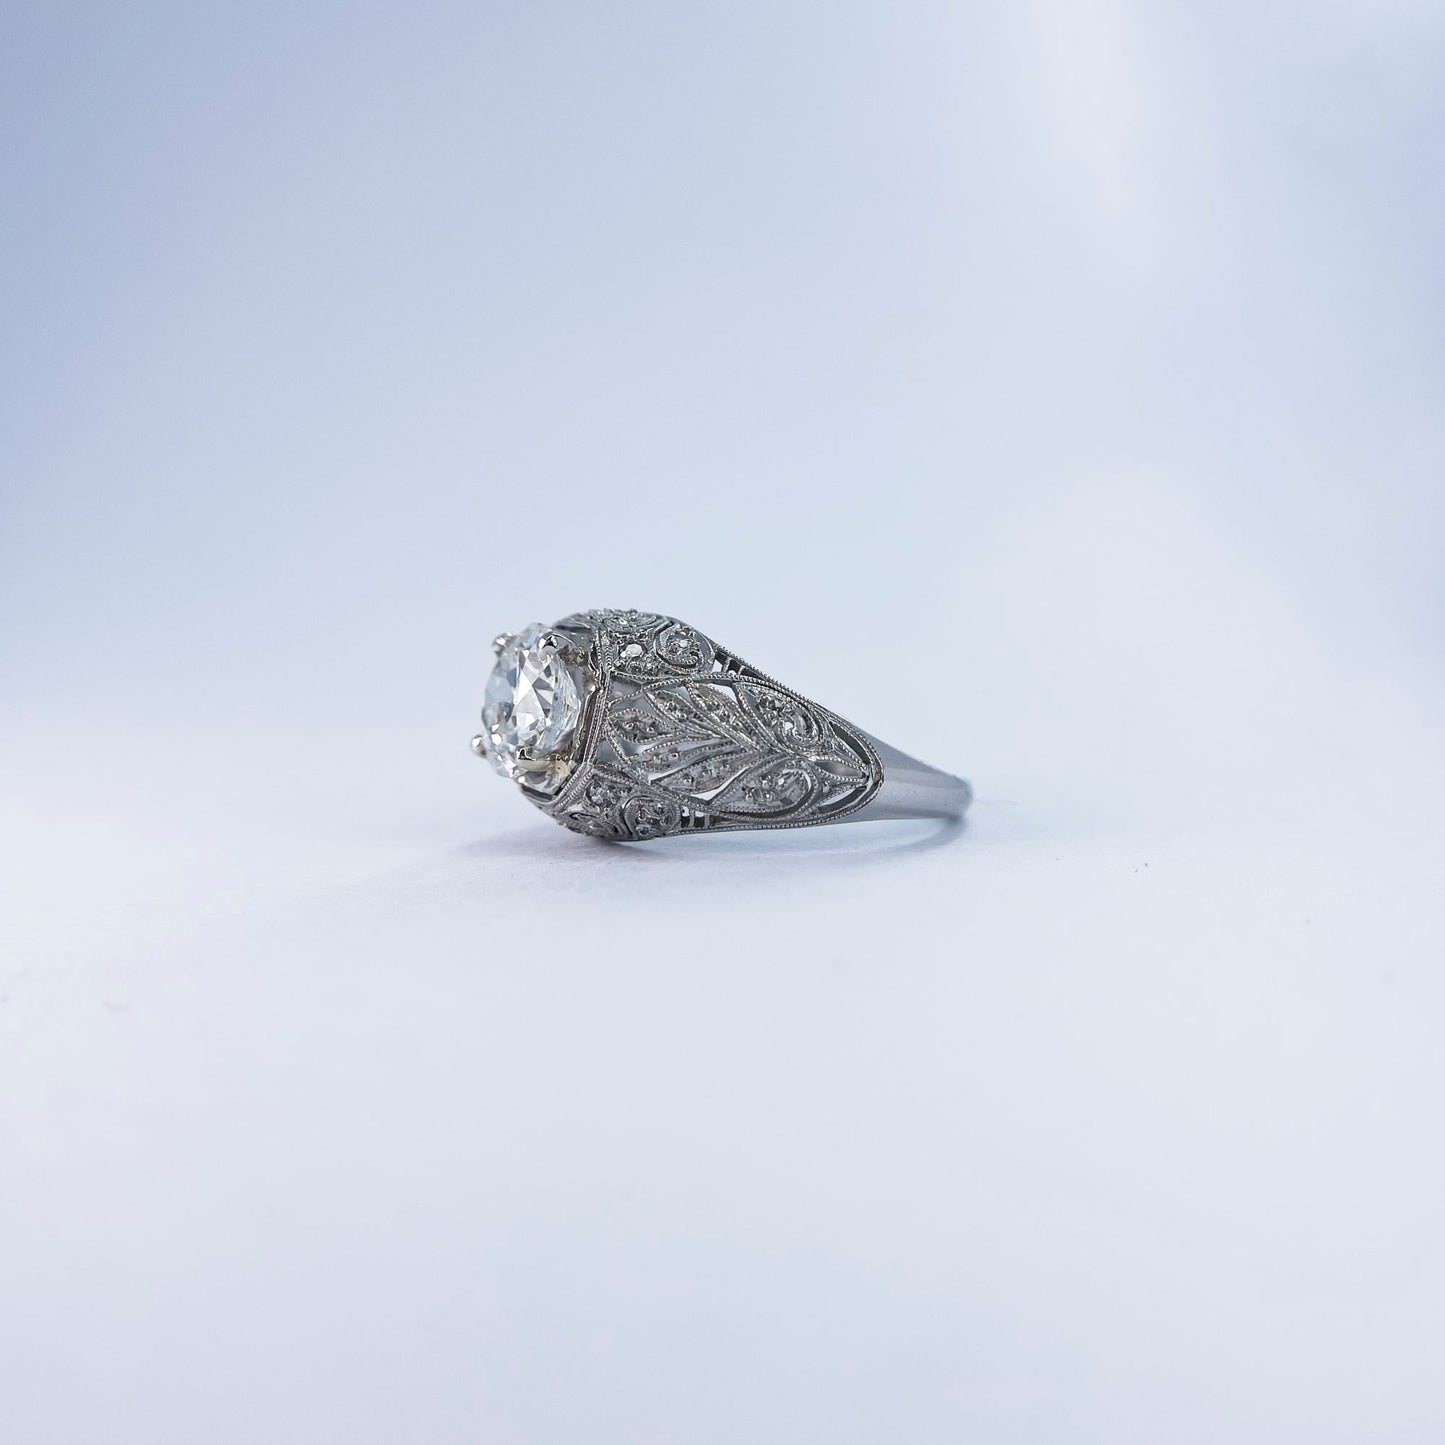 1920s Platinum Round Cut Diamond Ring with Extraordinary Filigree and Diamond Inlay